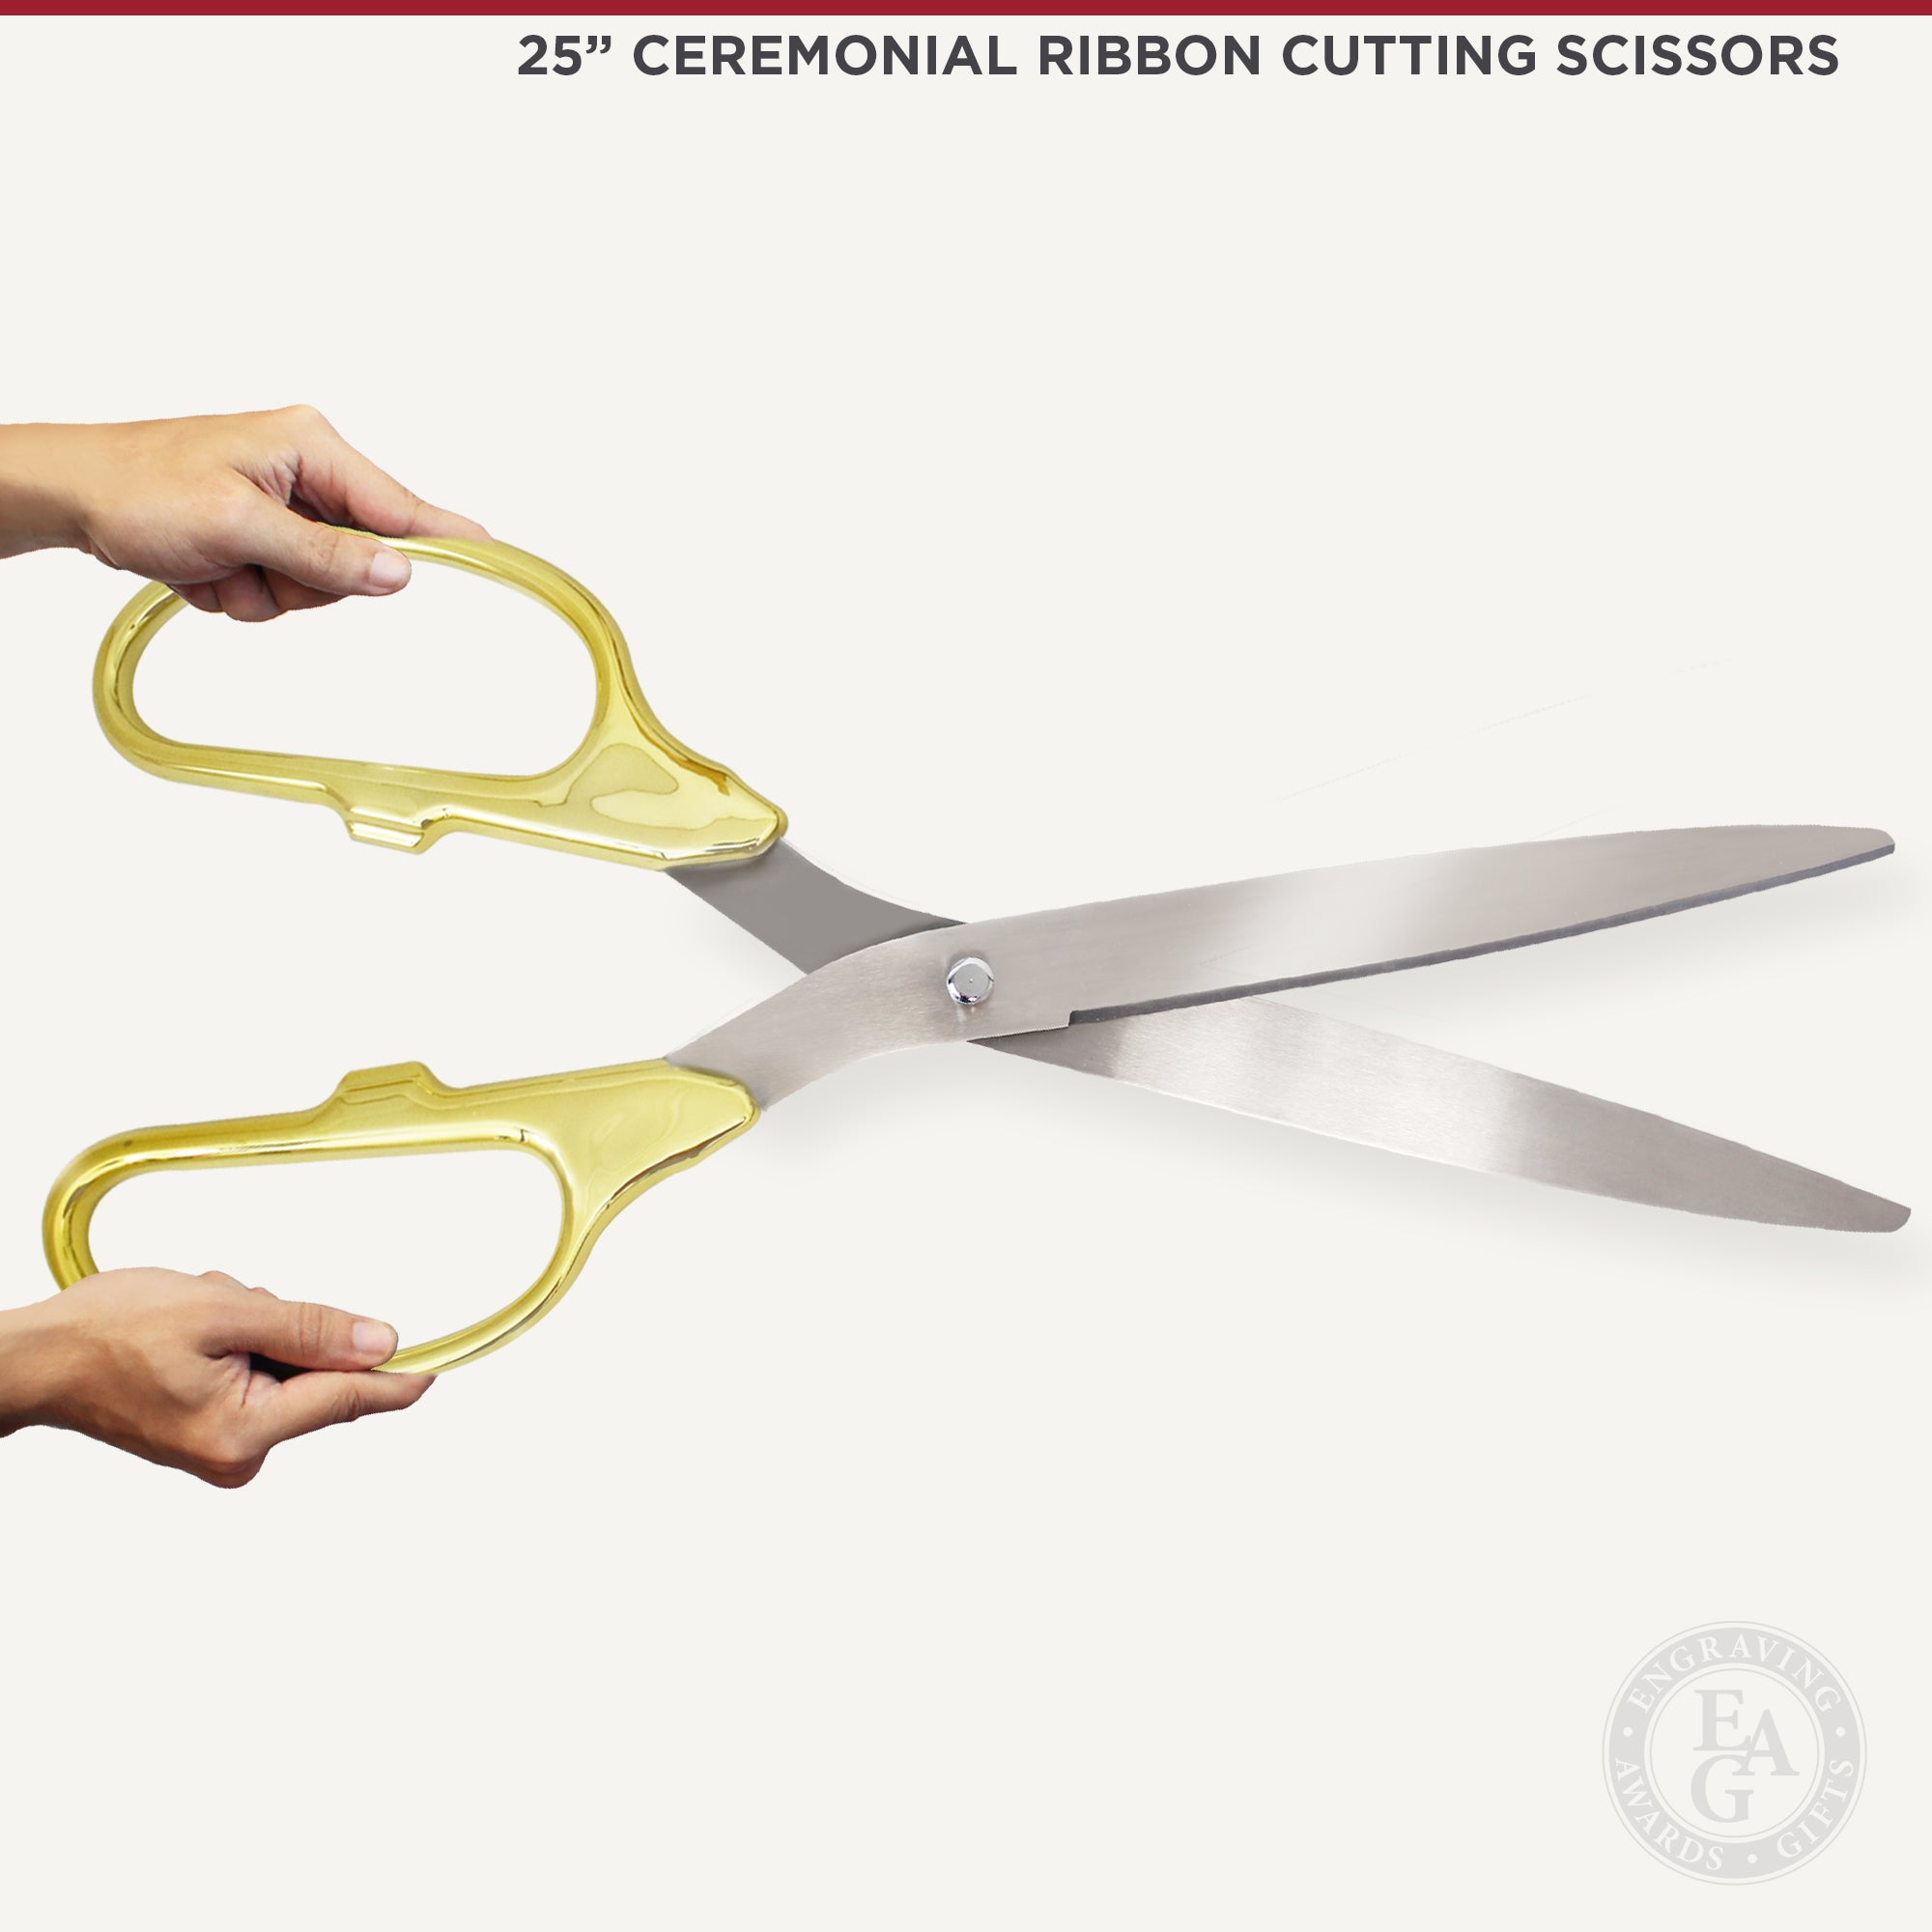 Golden Handle Stainless Steel Ceremonial Scissors